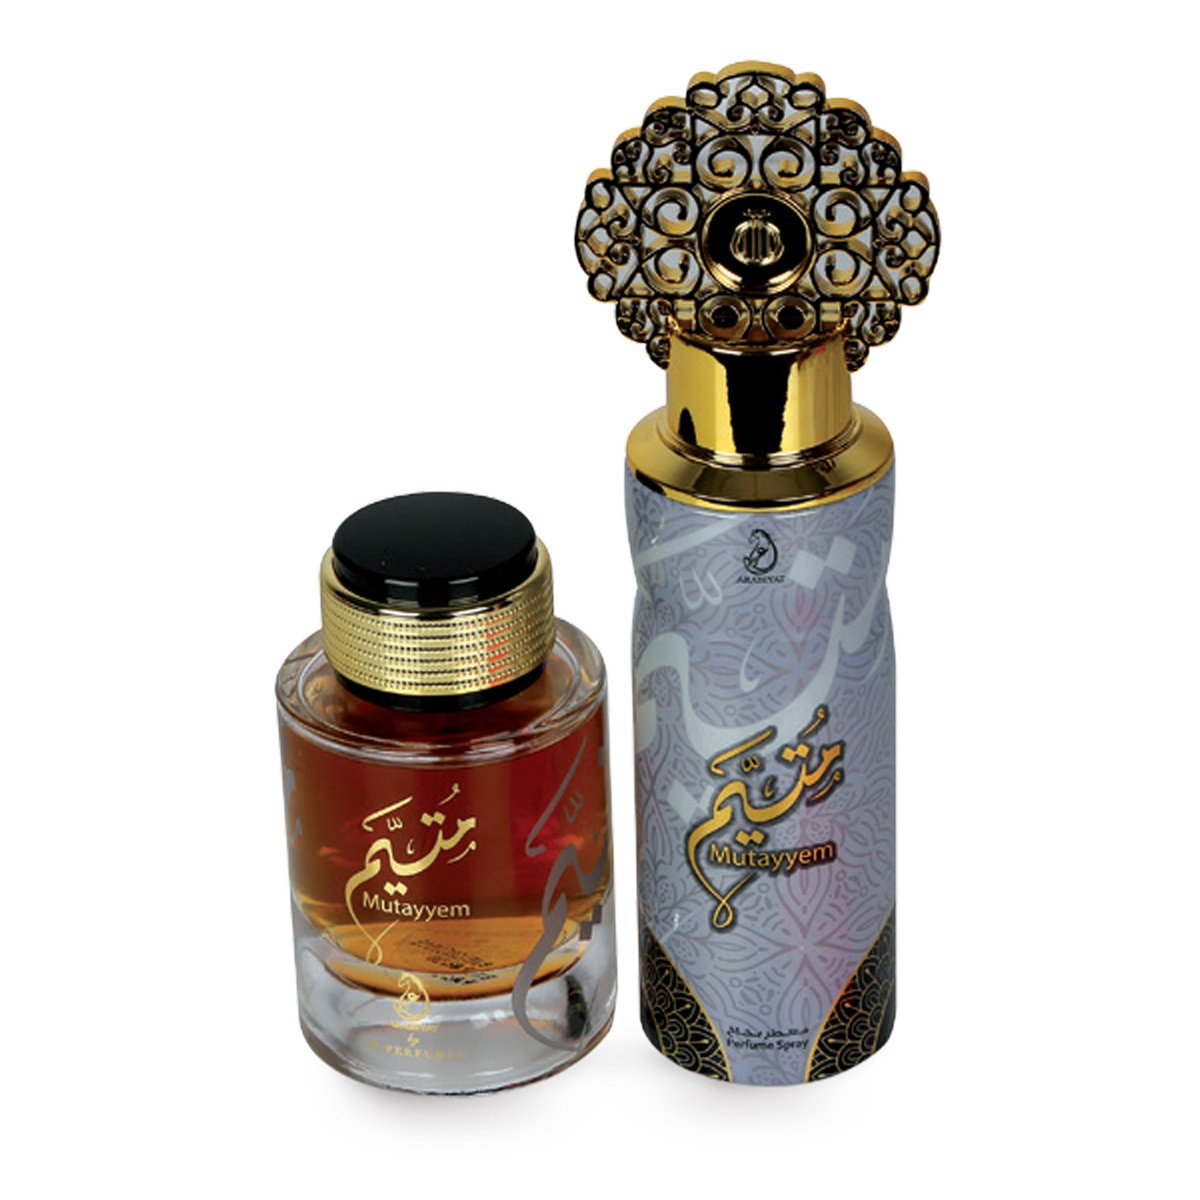 Arabiyat Mutayyem EDP 100 ml + Perfume Spray 200 ml